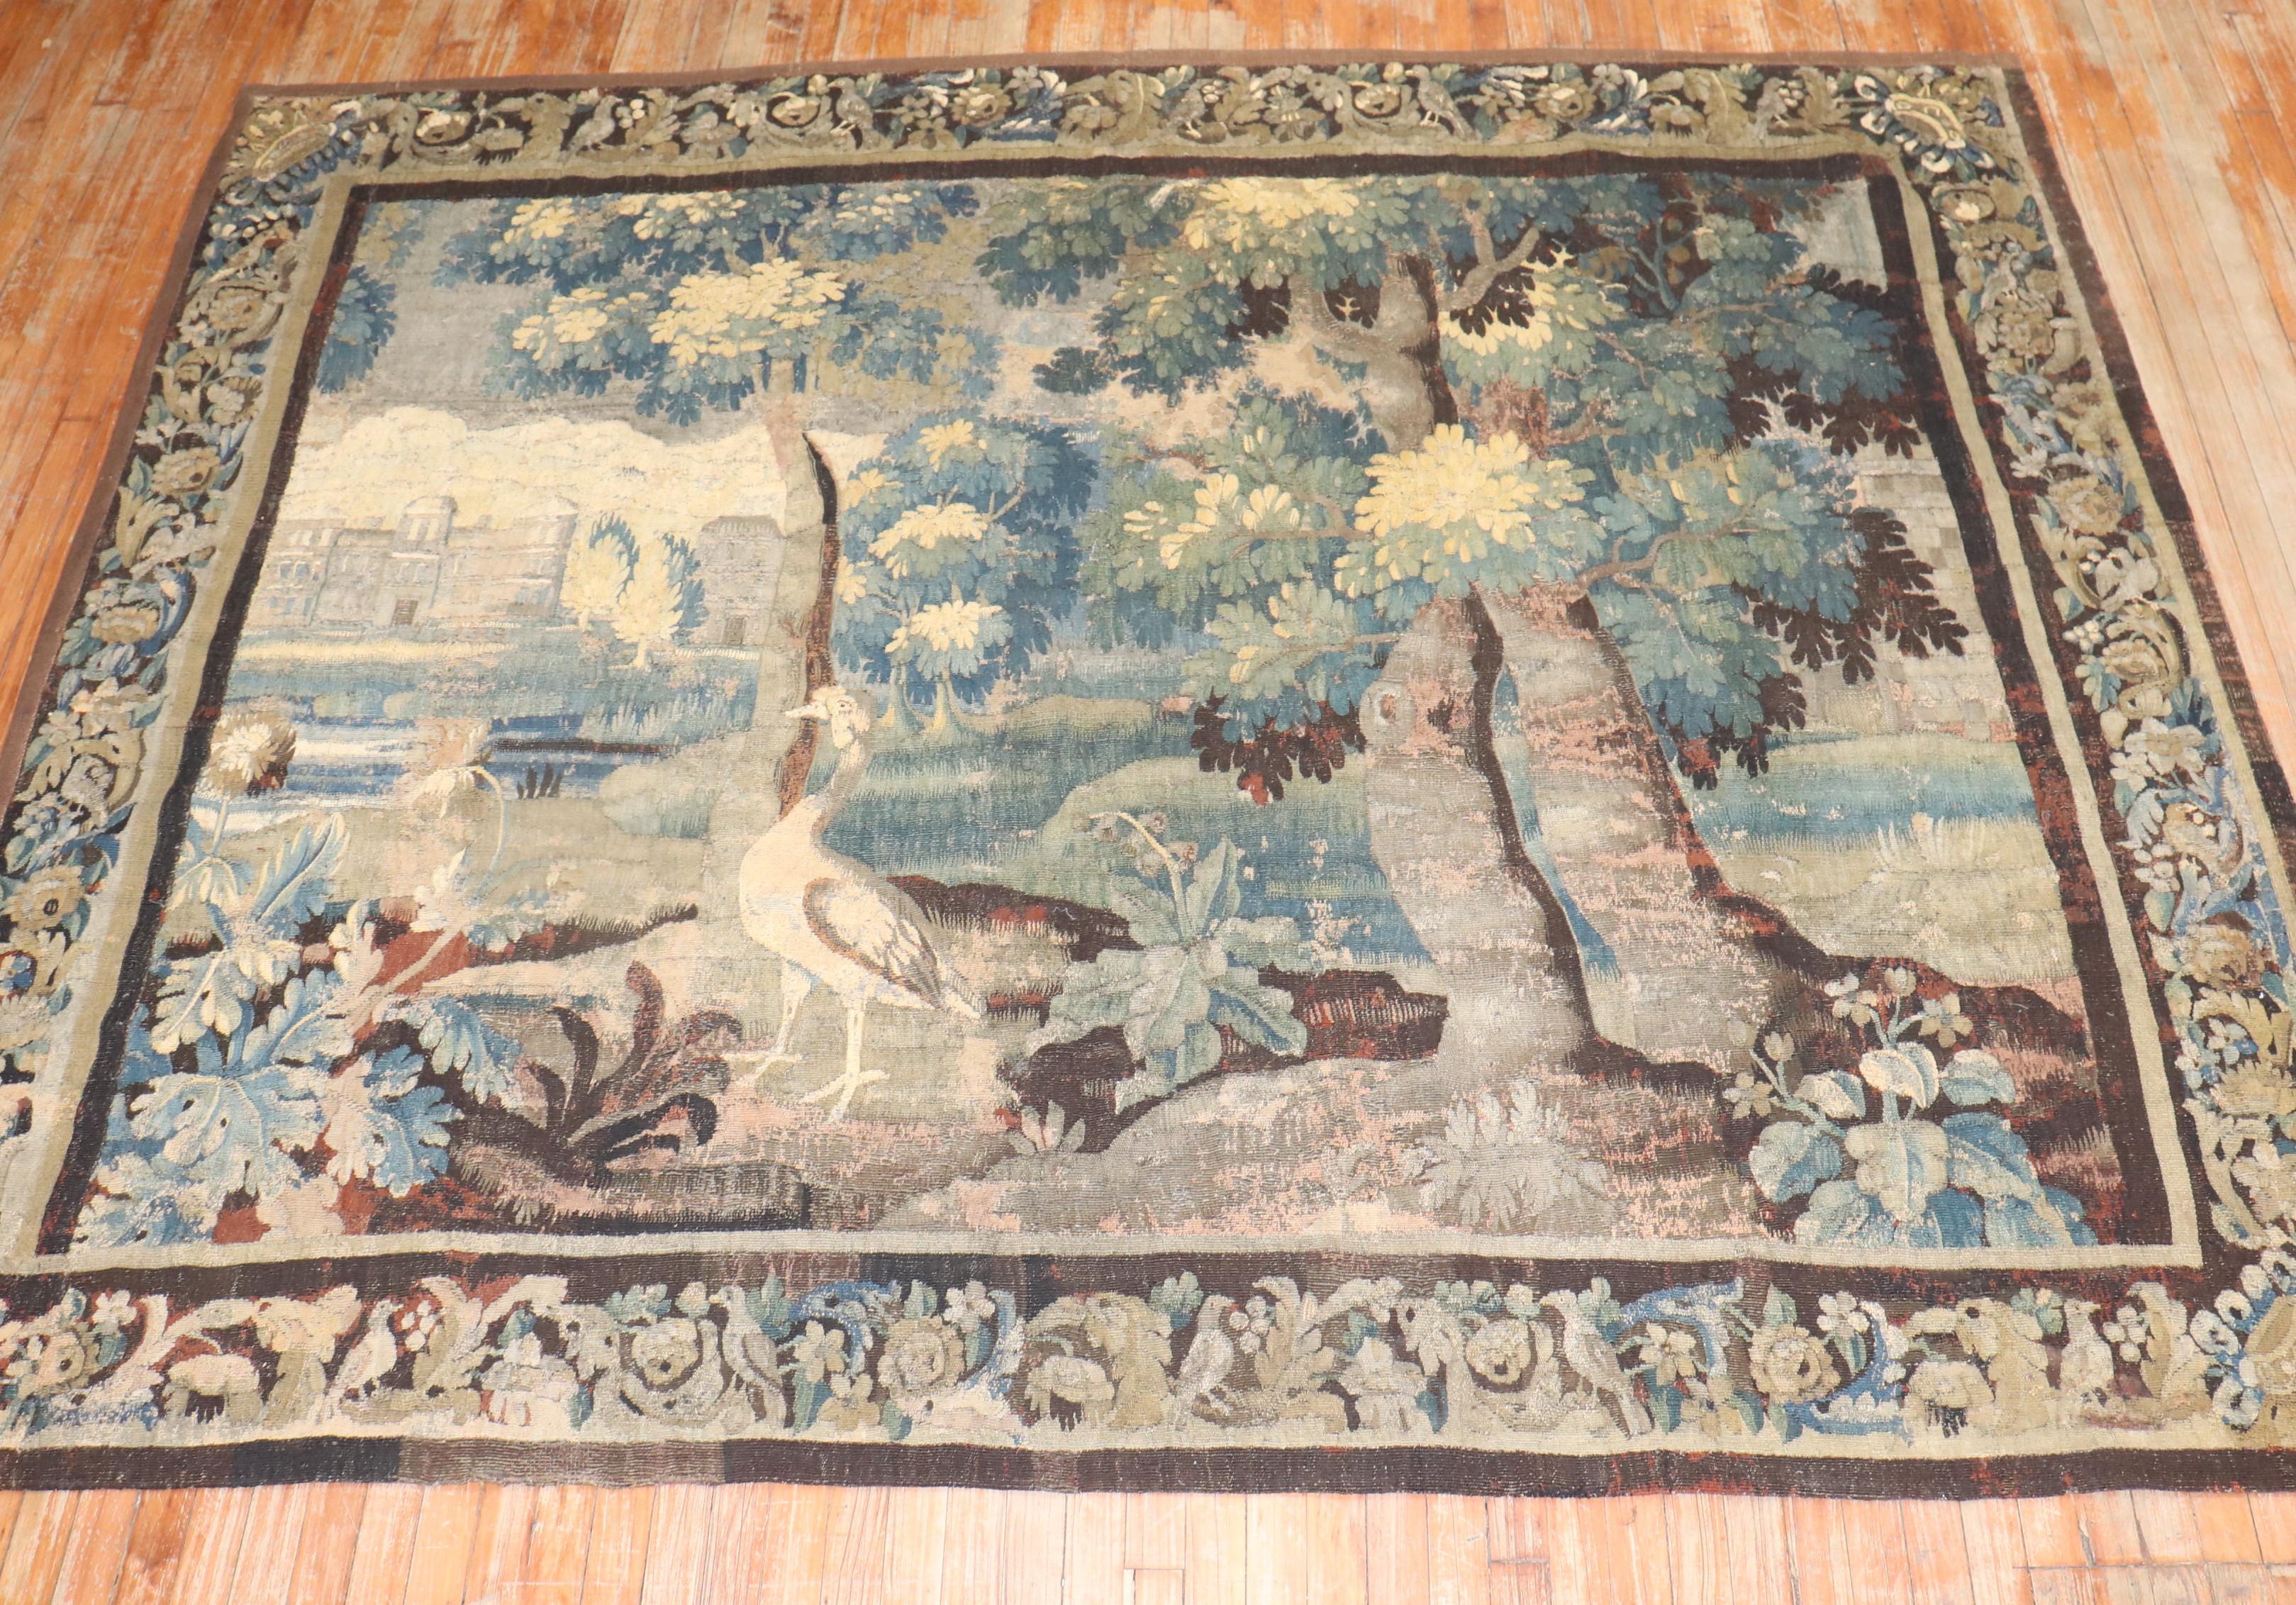 une tapisserie flamande Vedure de la fin du XVIIIe siècle

Mesures : 7'4'' de large x 9' de long.

Les tapisseries font partie intégrante du patrimoine culturel flamand. La plupart des tapisseries présentent des sujets religieux, mythologiques et